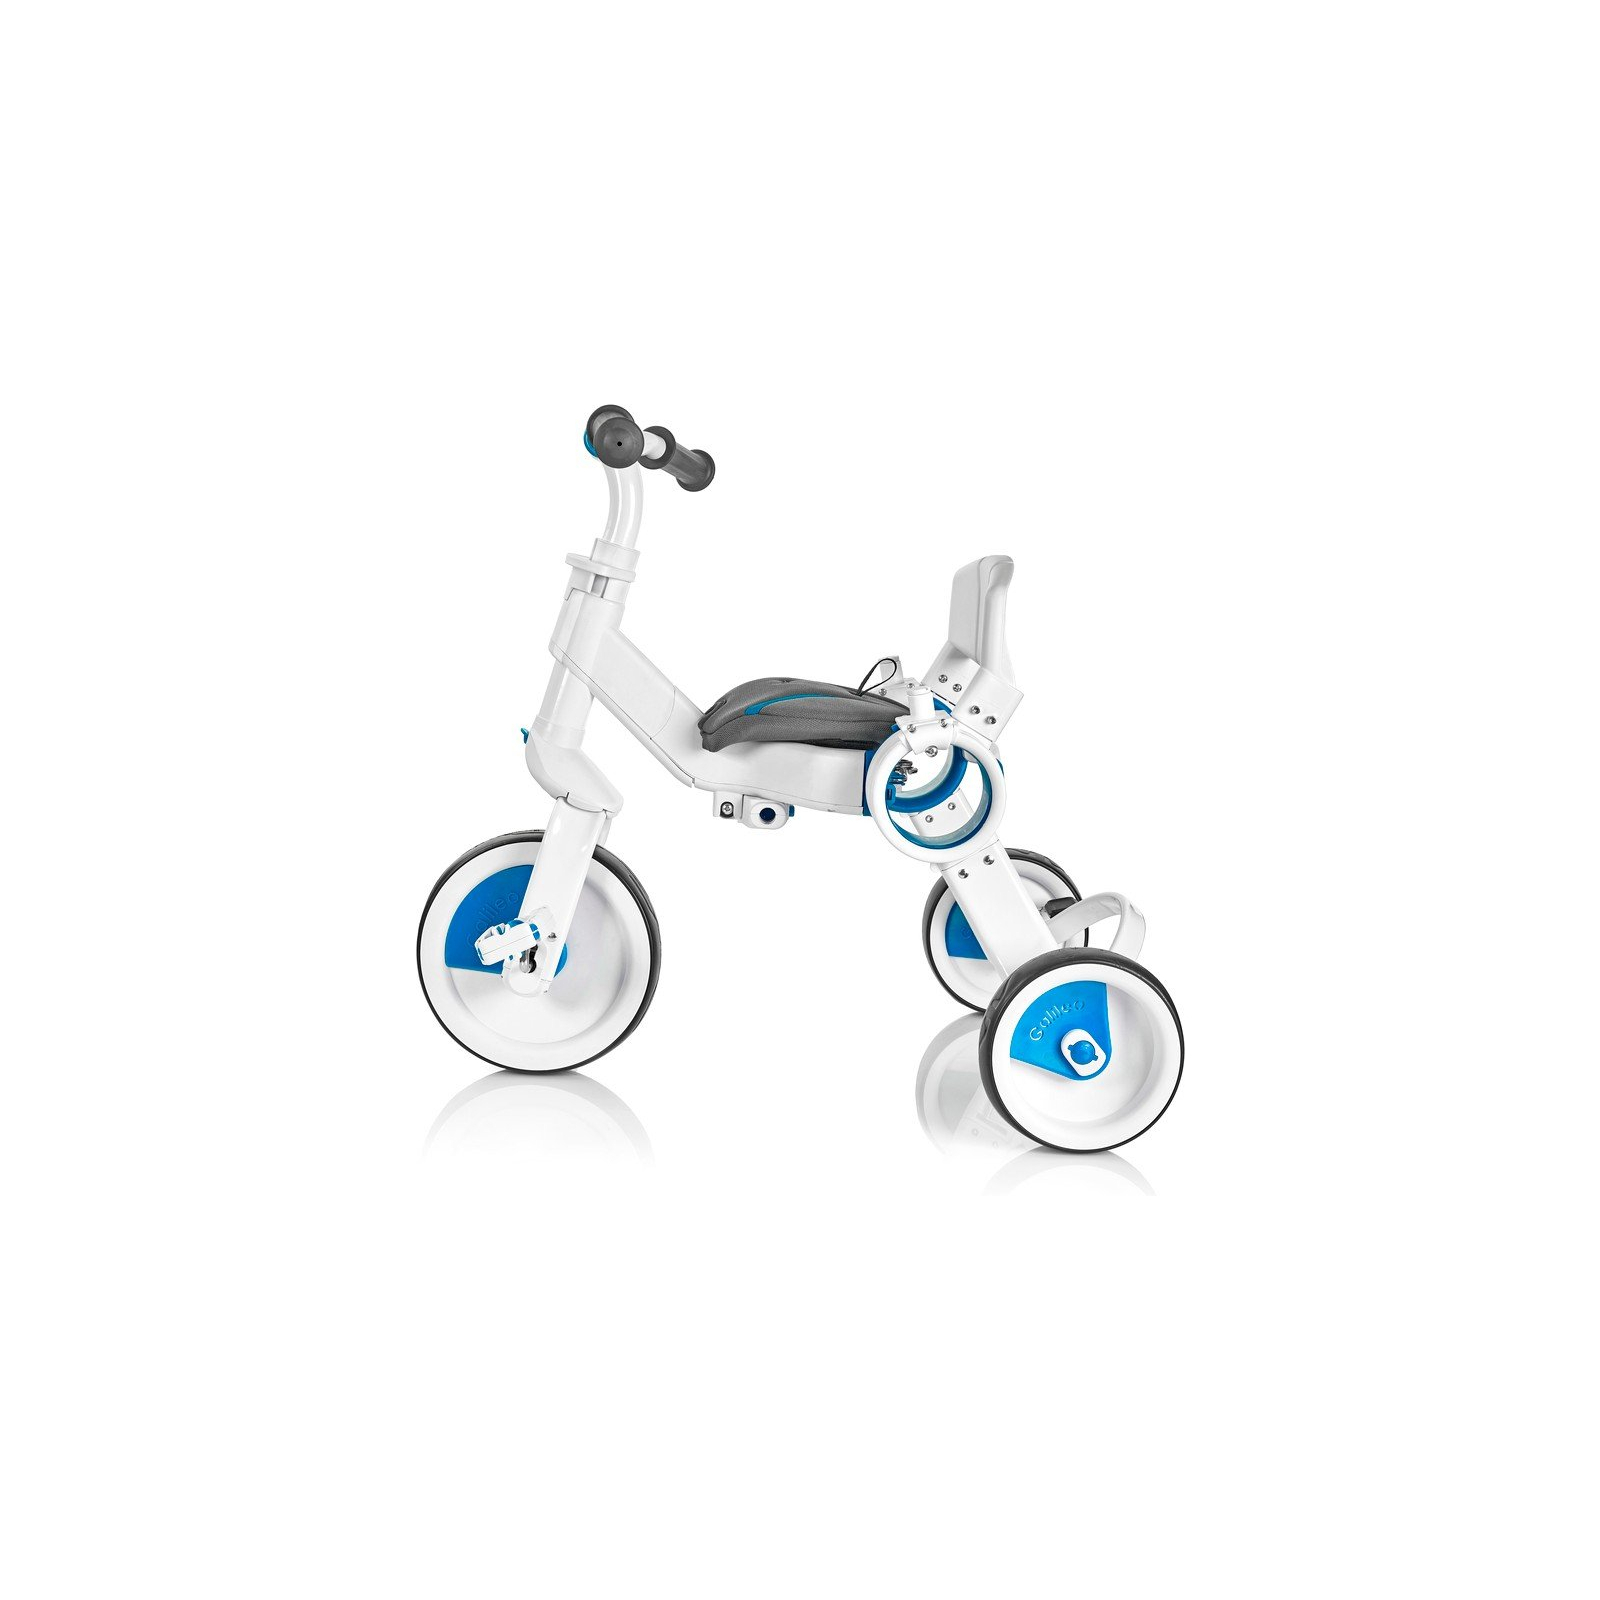 Детский велосипед Galileo Strollcycle Синий (G-1001-B) изображение 9